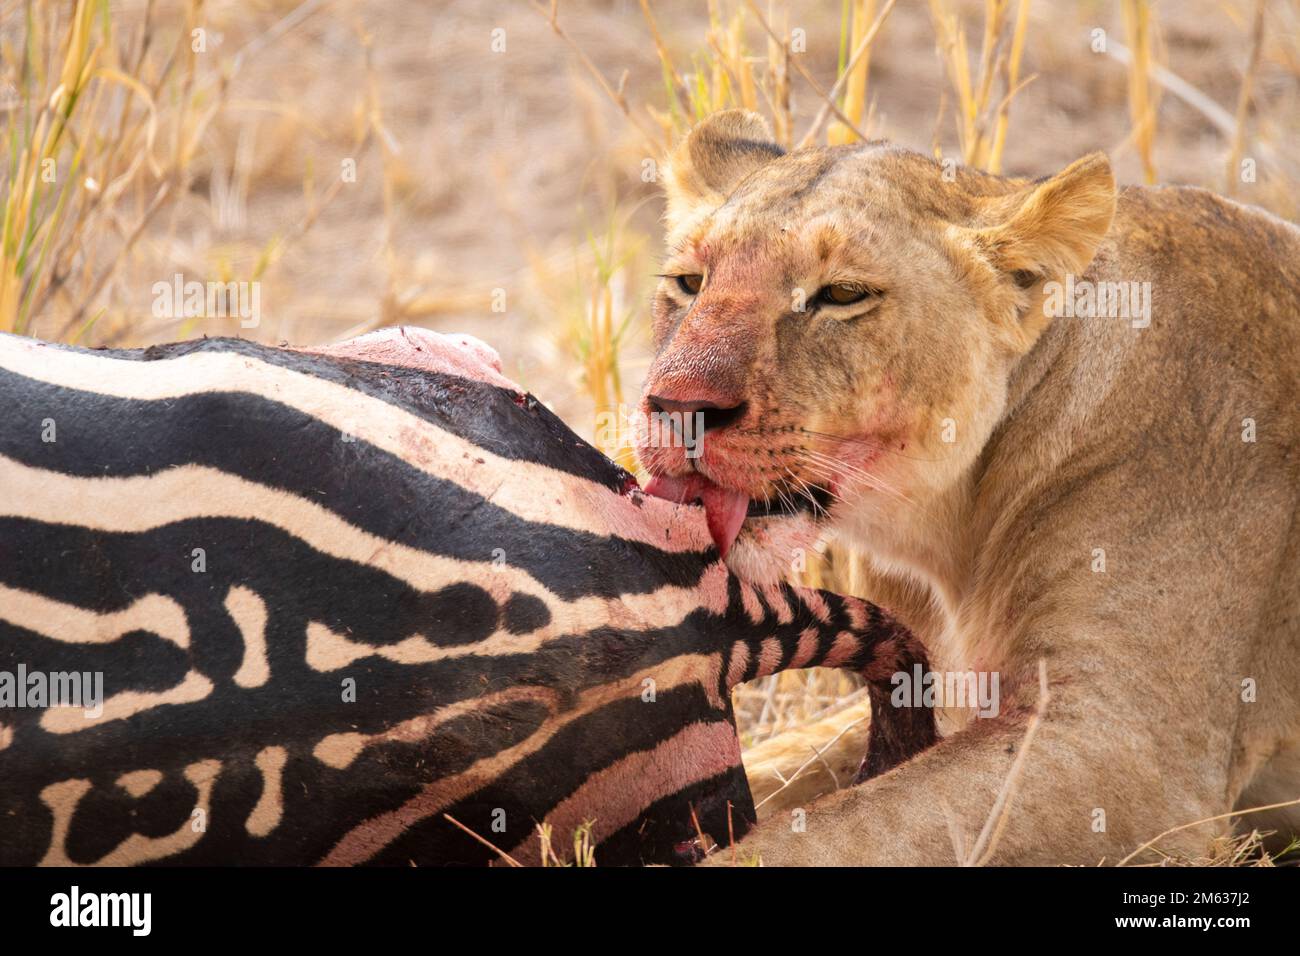 Wilde, gefährliche Löwin mit Blut auf Maulkorb, die Zebra isst, nach erfolgreicher Jagd in Savanna Stockfoto